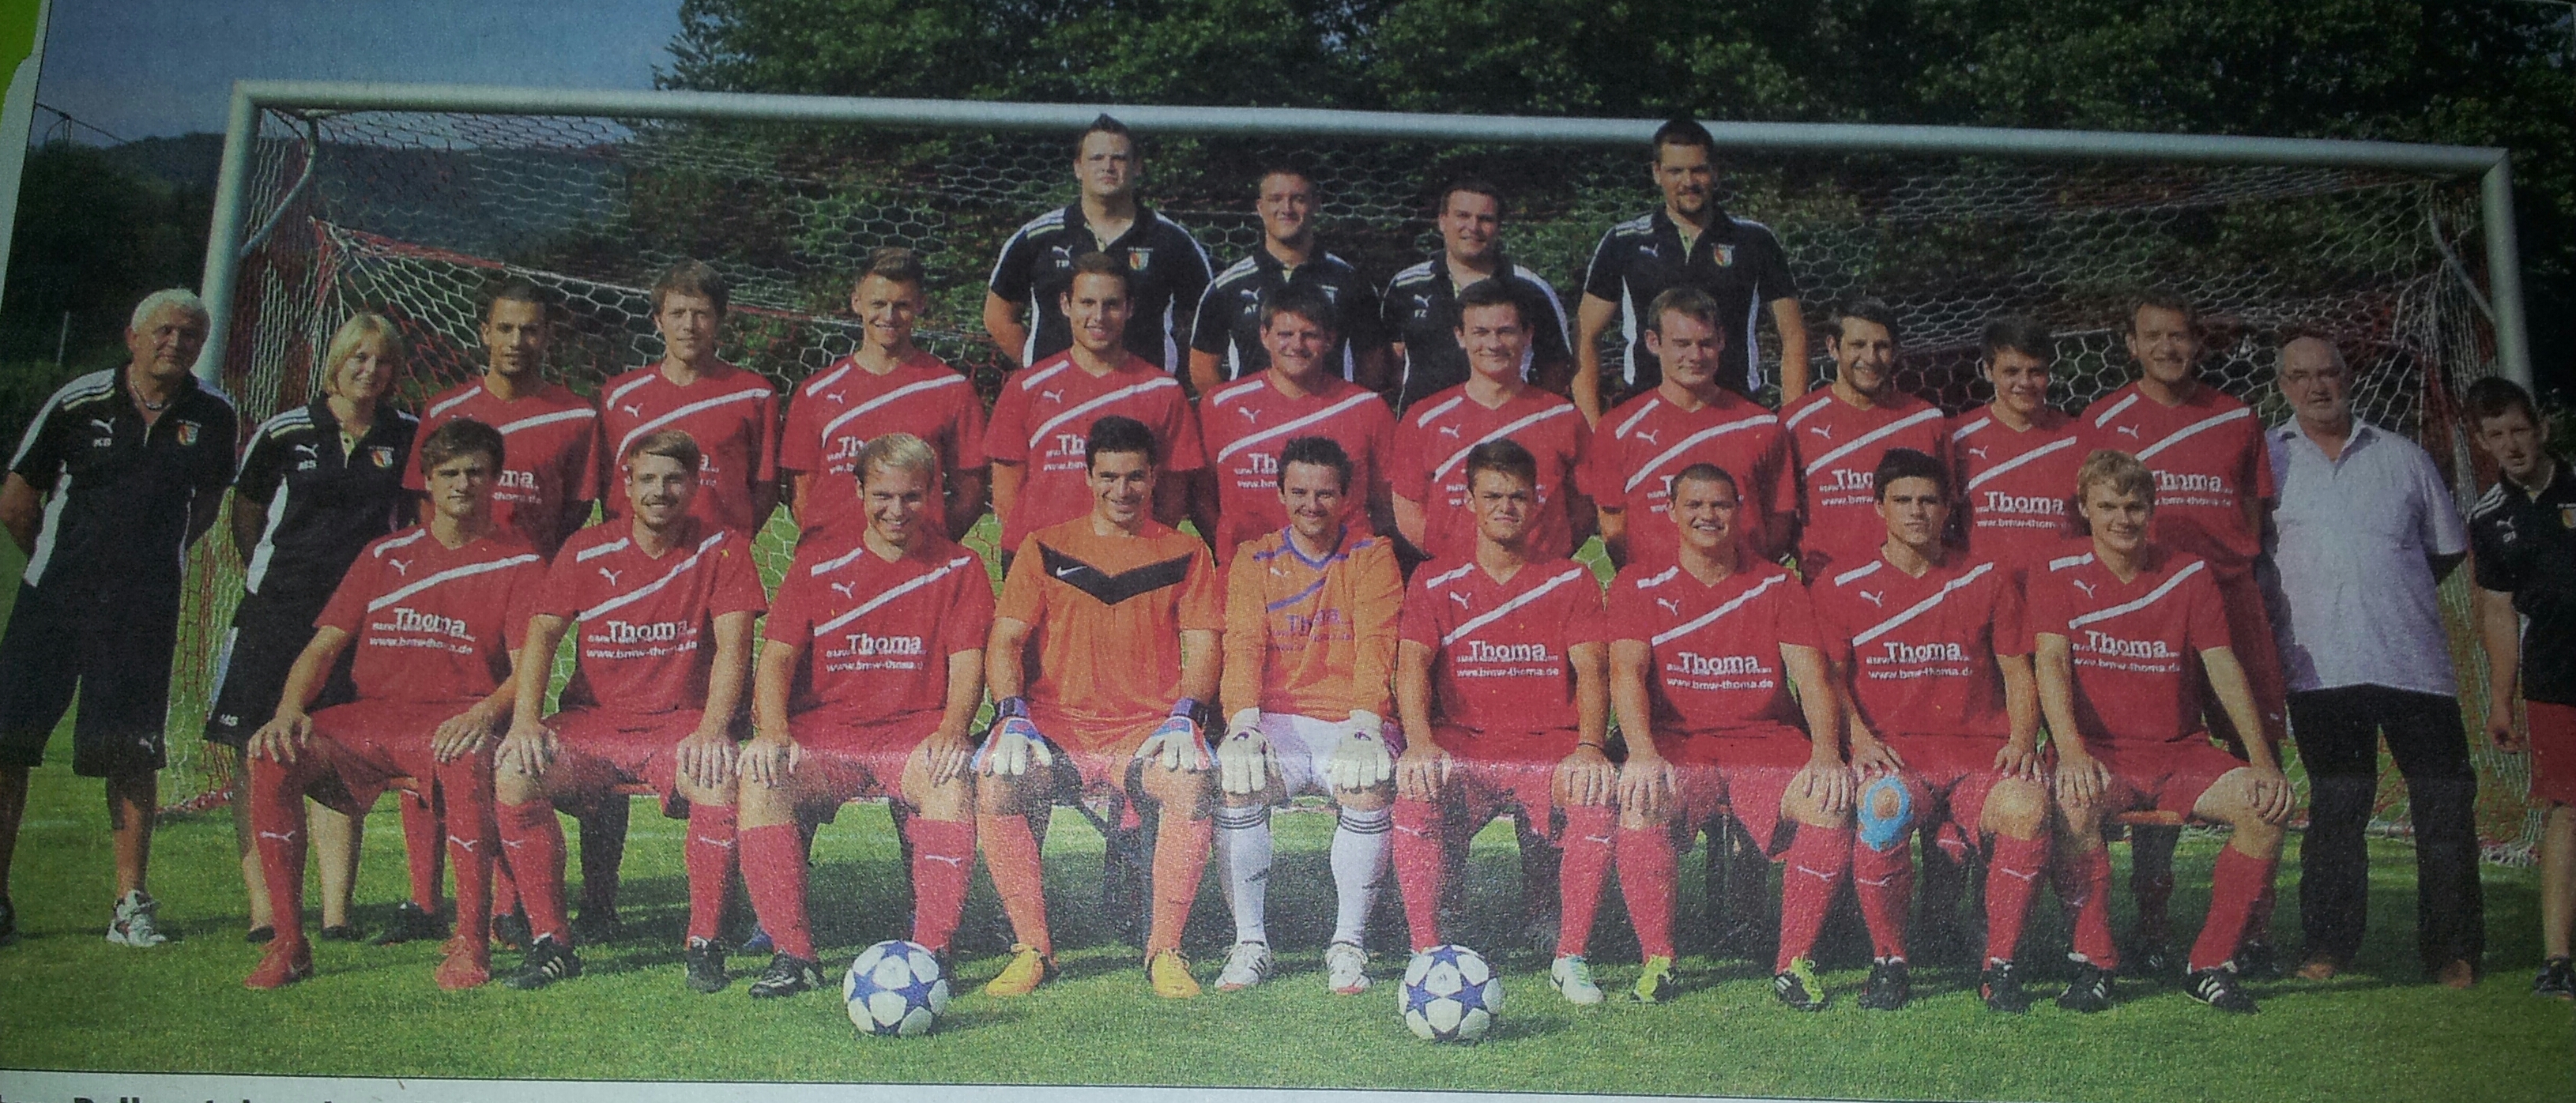 Mannschaftsfoto/Teamfoto von FC Sexau 2